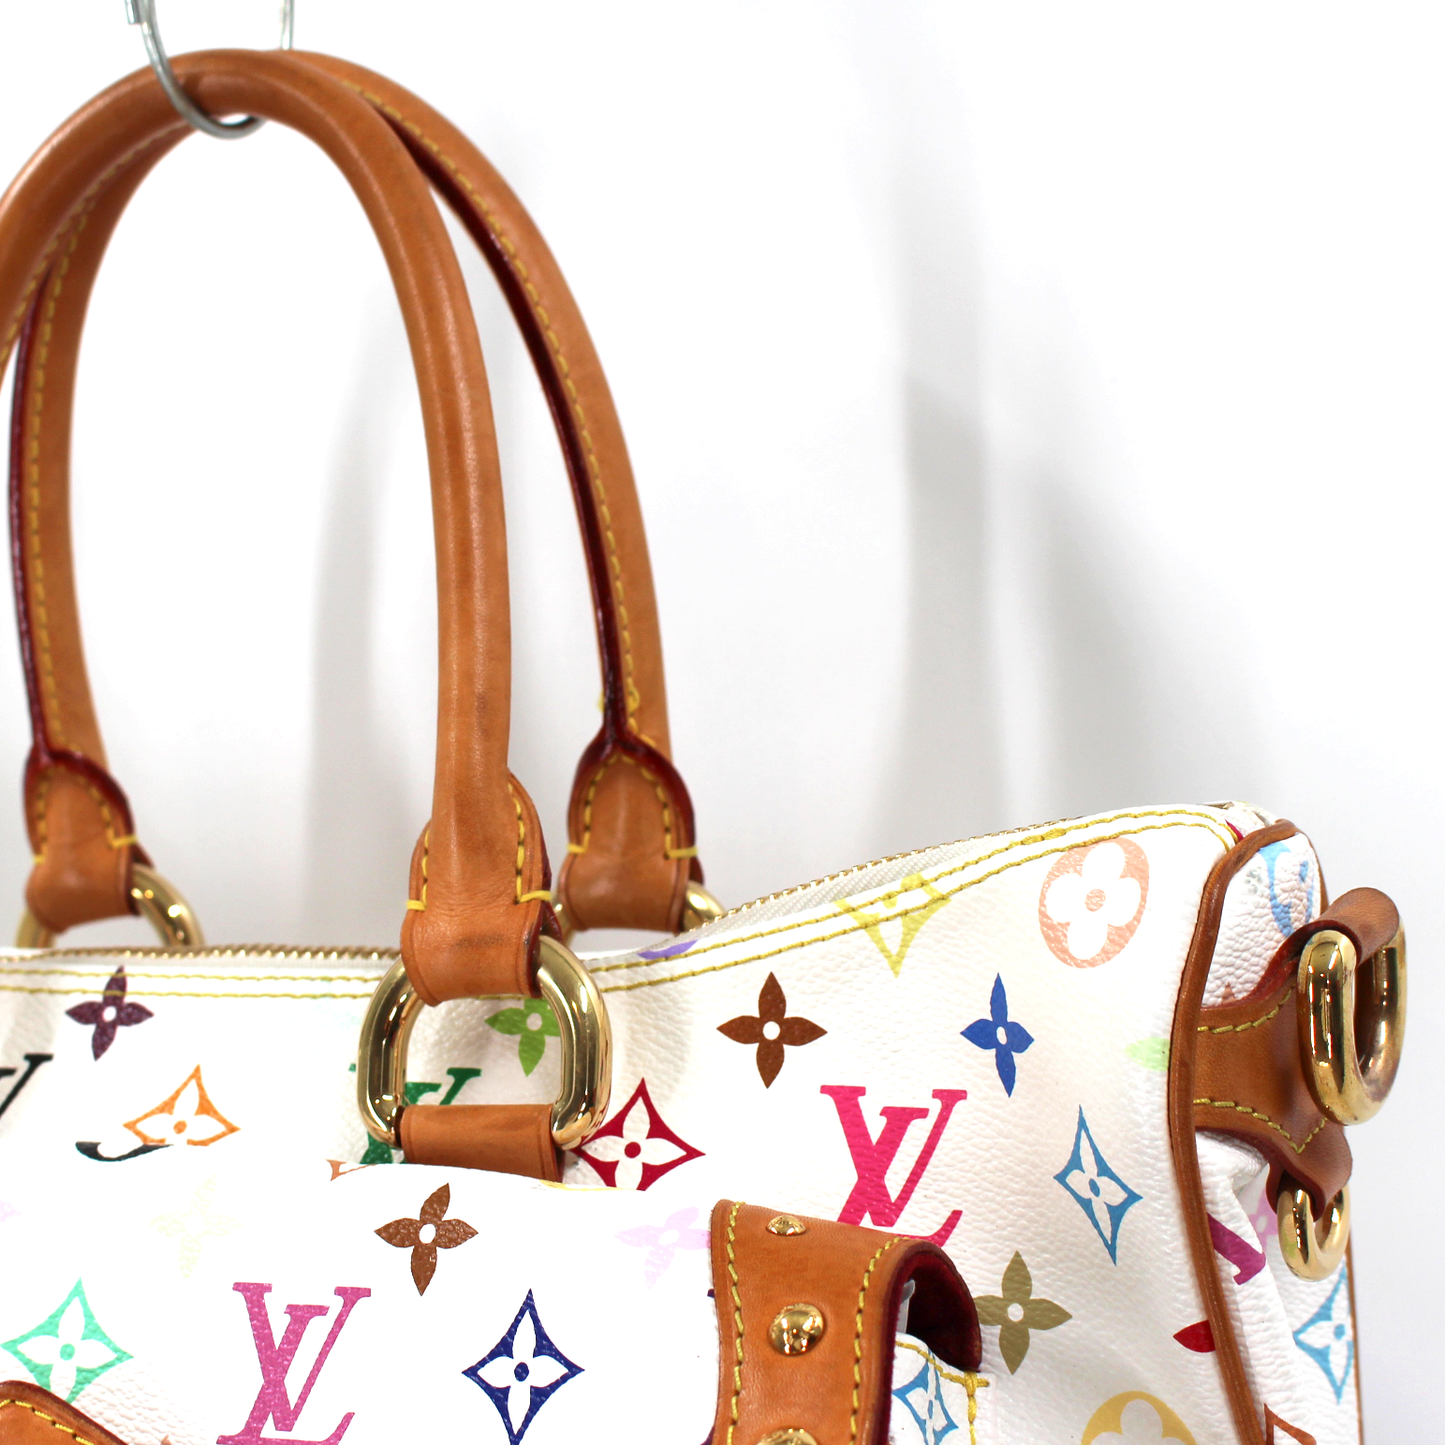 Louis Vuitton Rita Handbag 362924